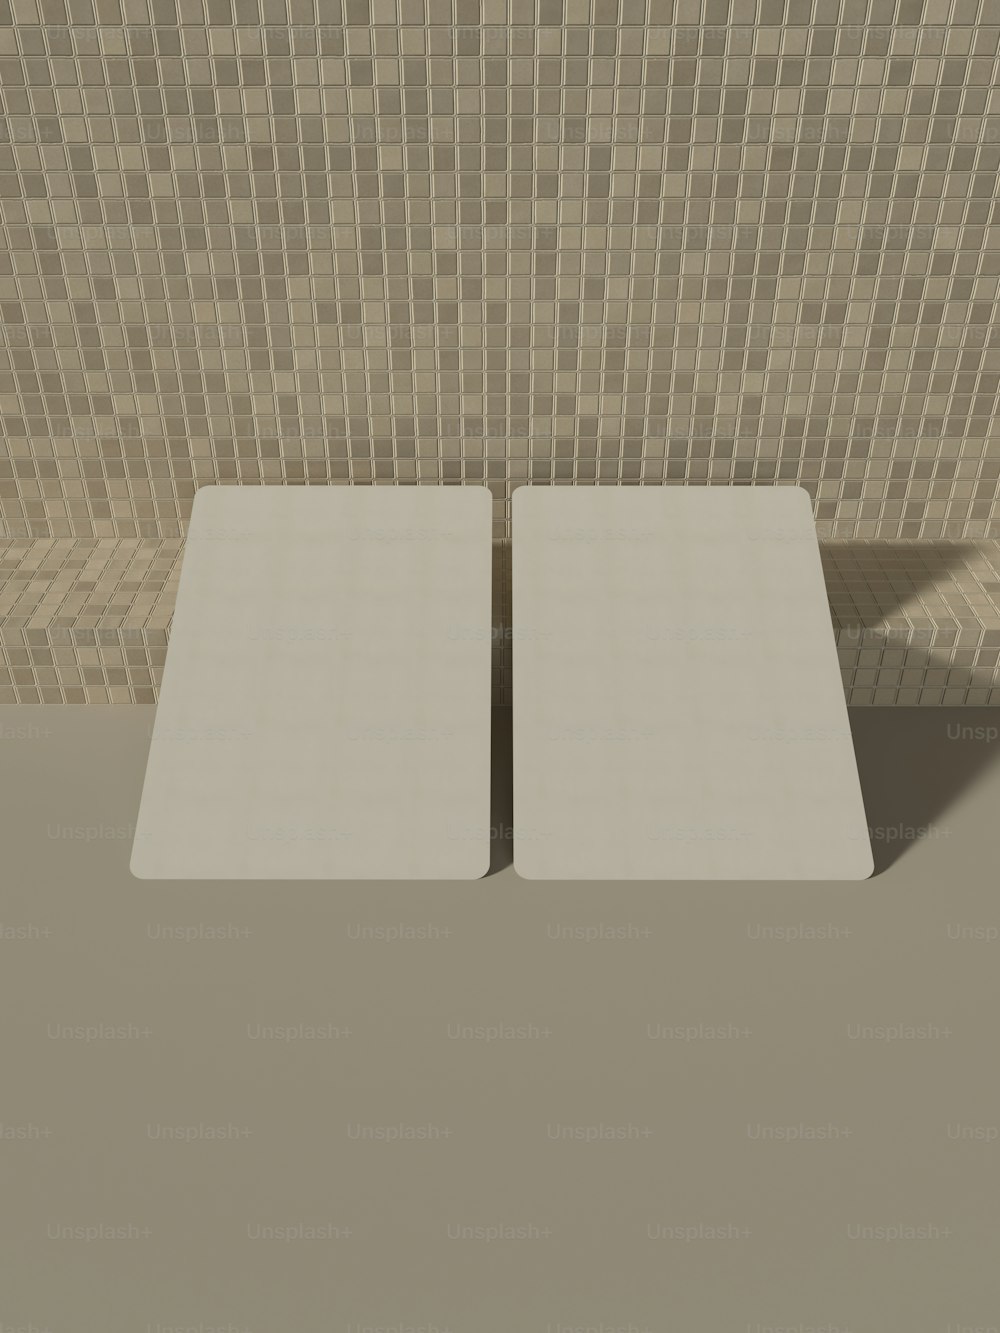 タイル張りの壁の前にある白い正方形のテーブルのペア